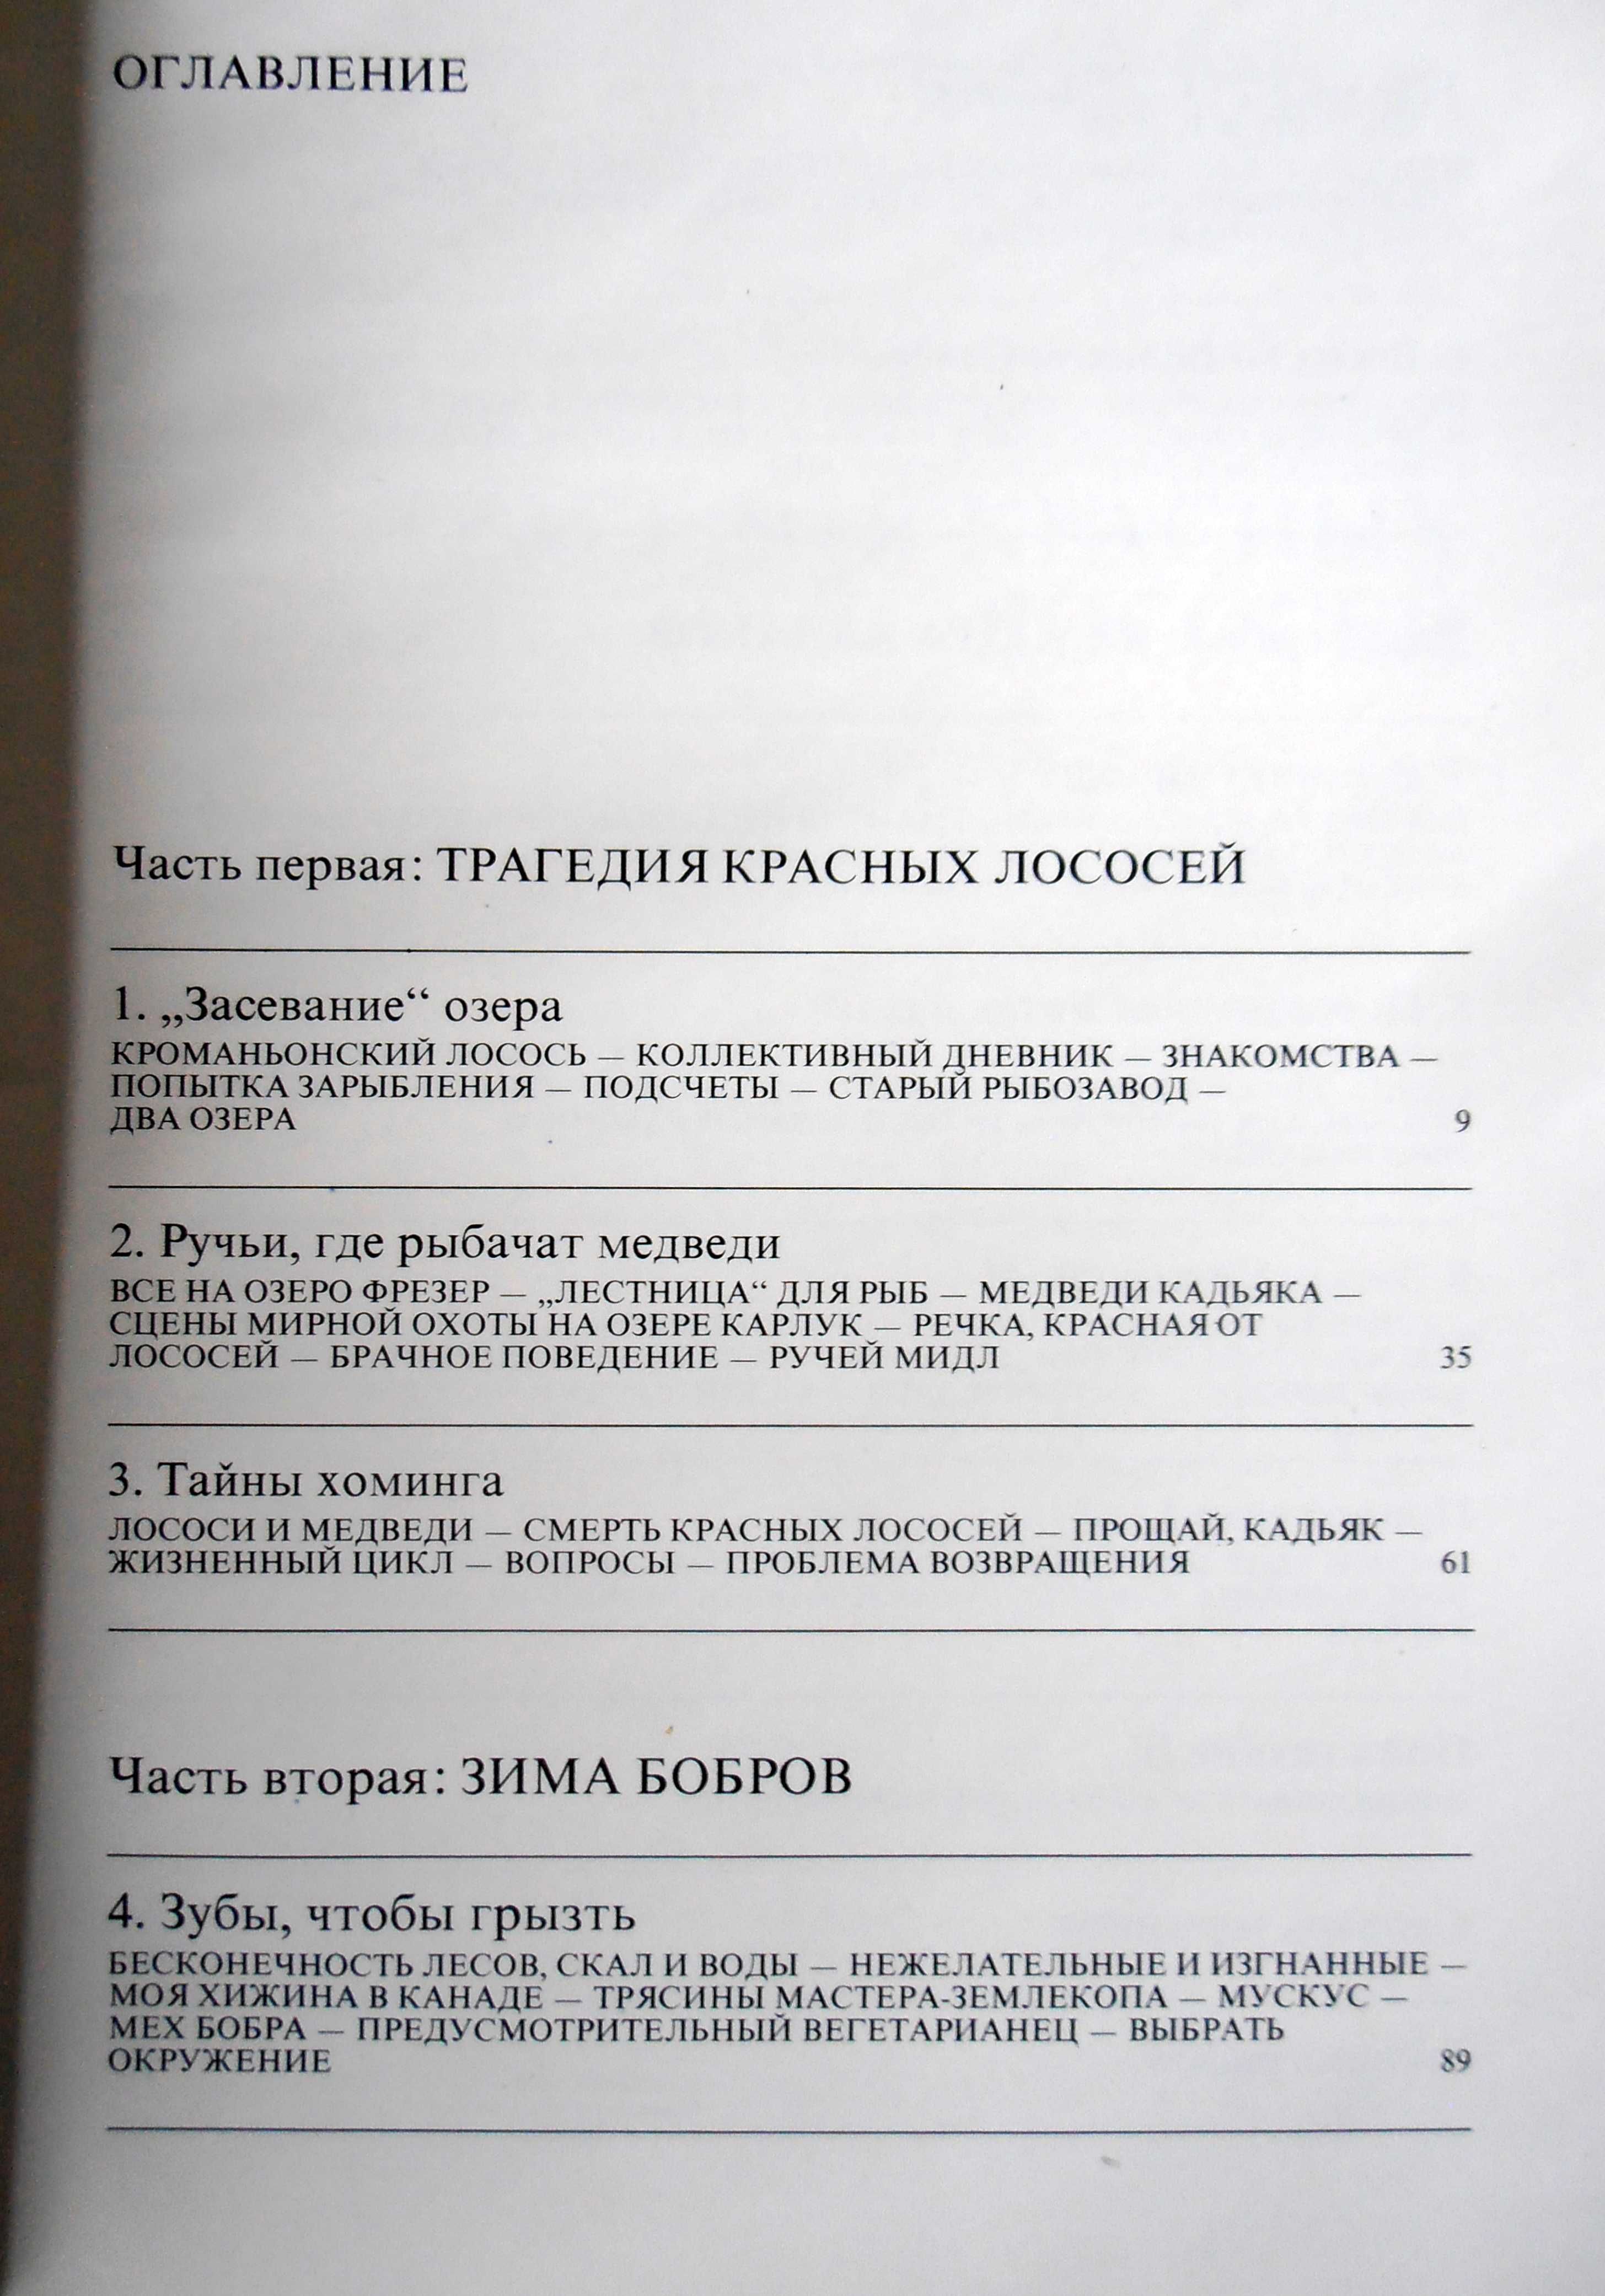 3 тома Ж. И. Кусто "Сюрпризы моря" и др.